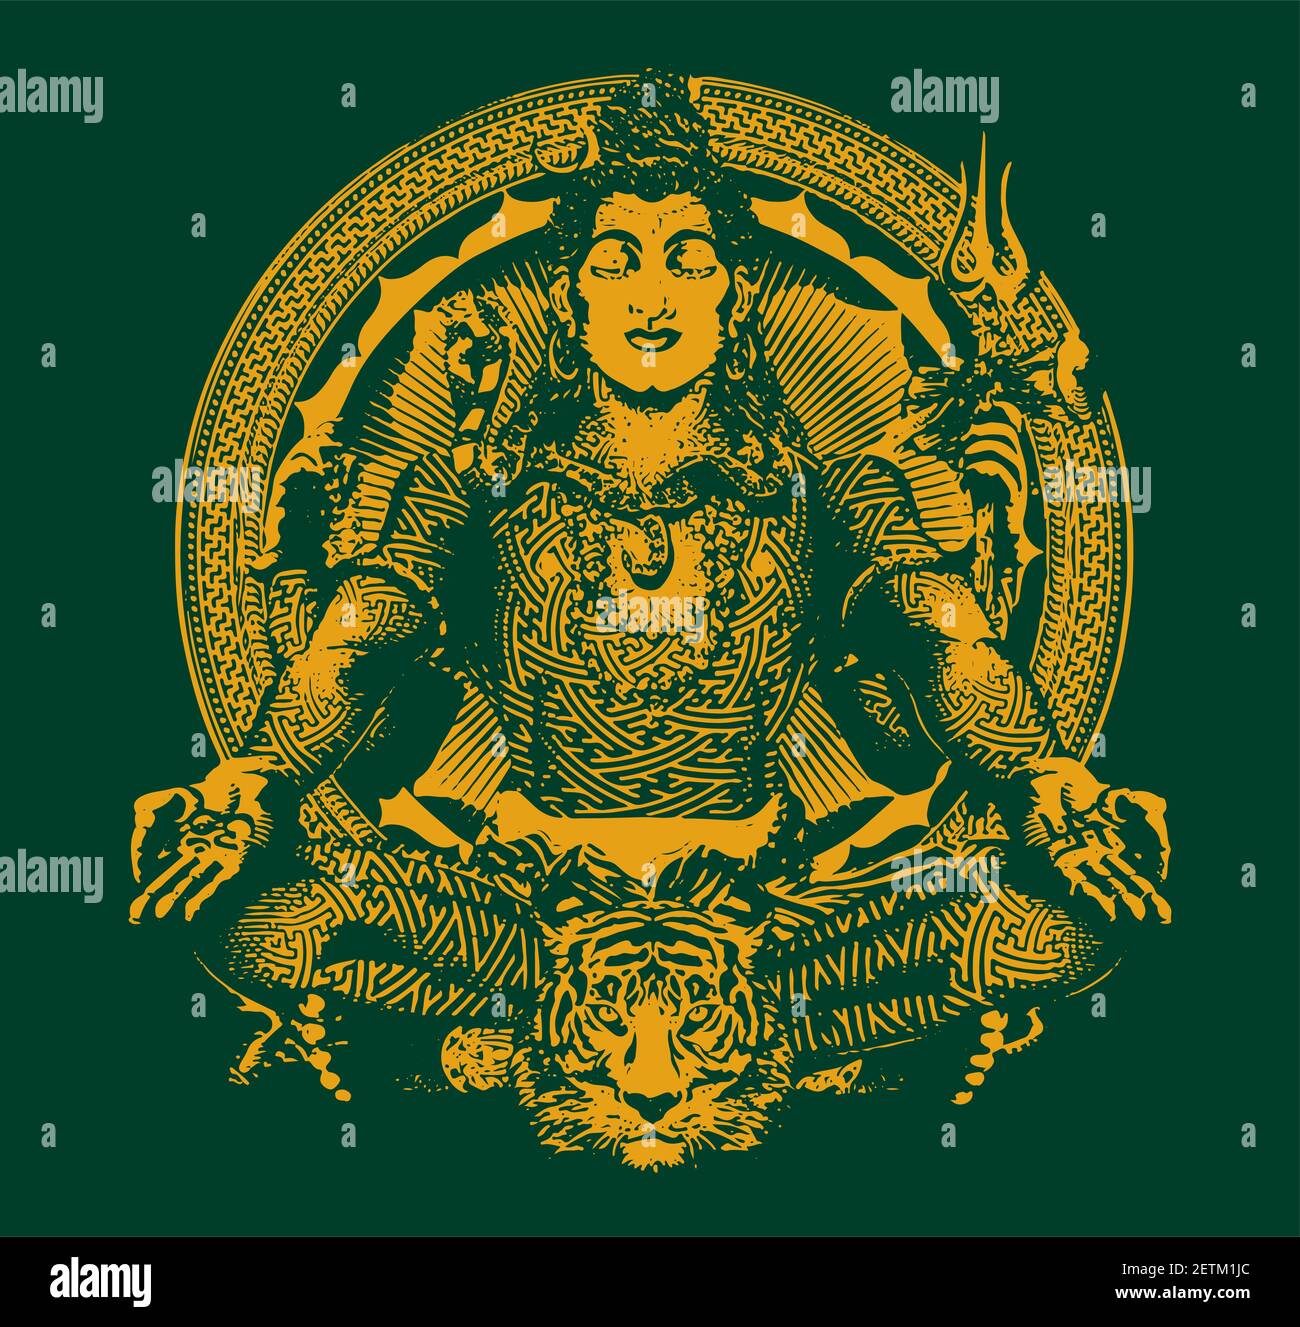 Un disegno o schizzo del signore indiano Shiva e suo simboli delineati nell'illustrazione Foto Stock